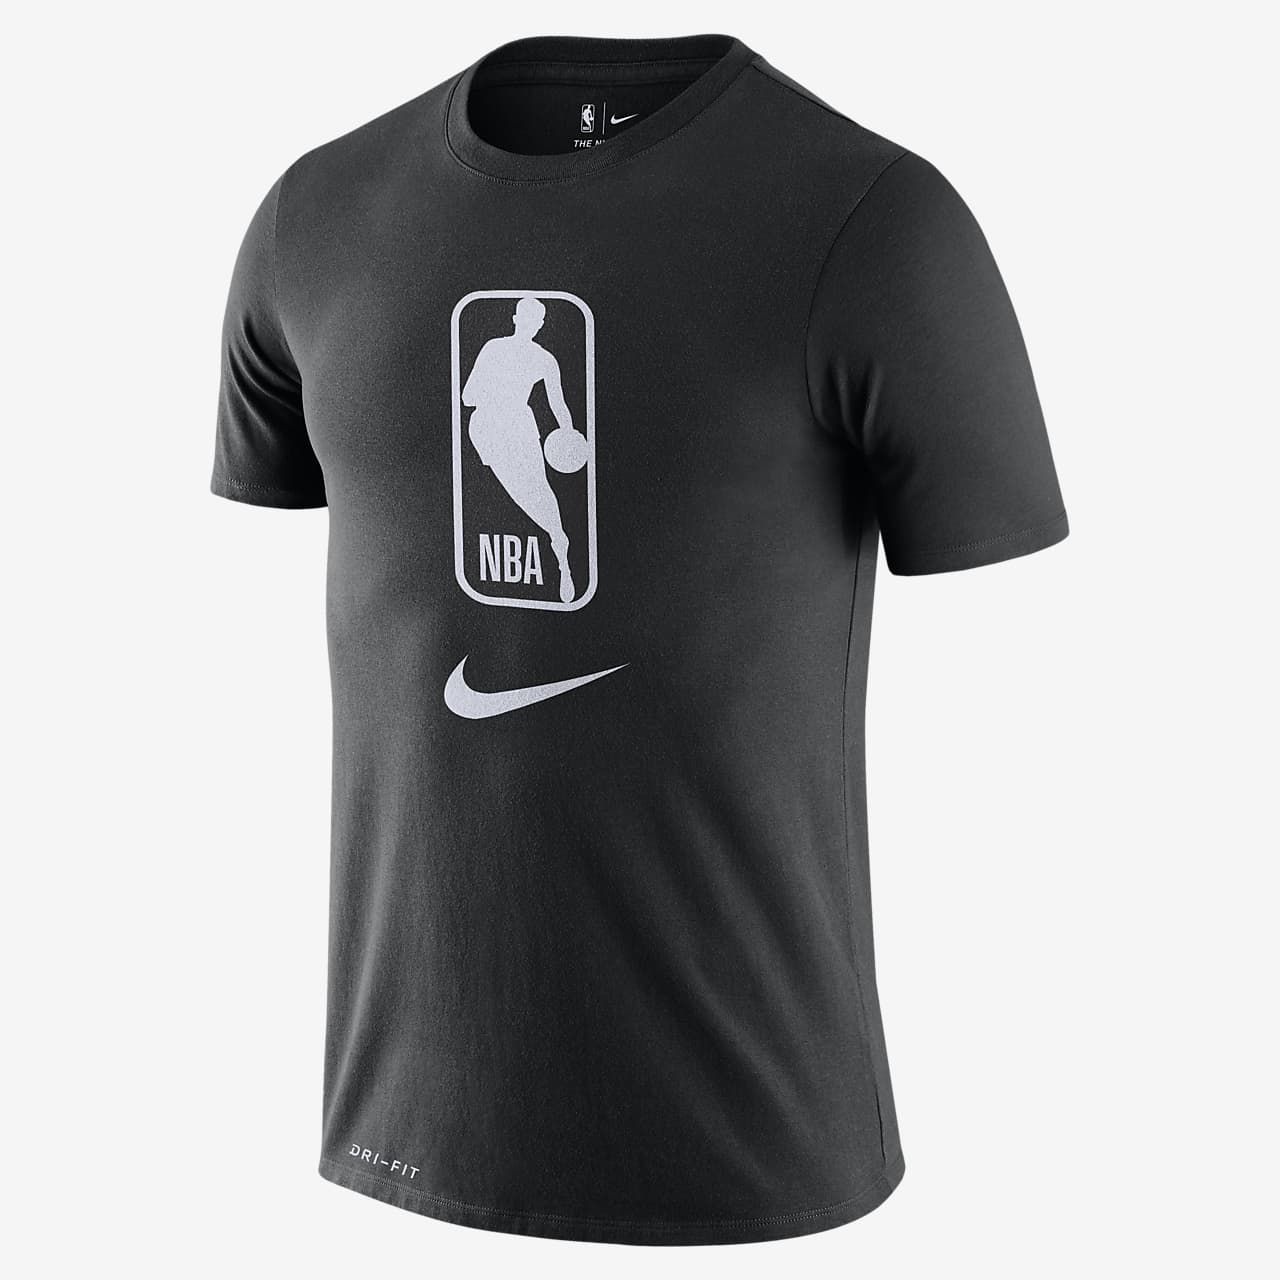 T-shirt Team 31 Nike Dri-FIT NBA - Uomo